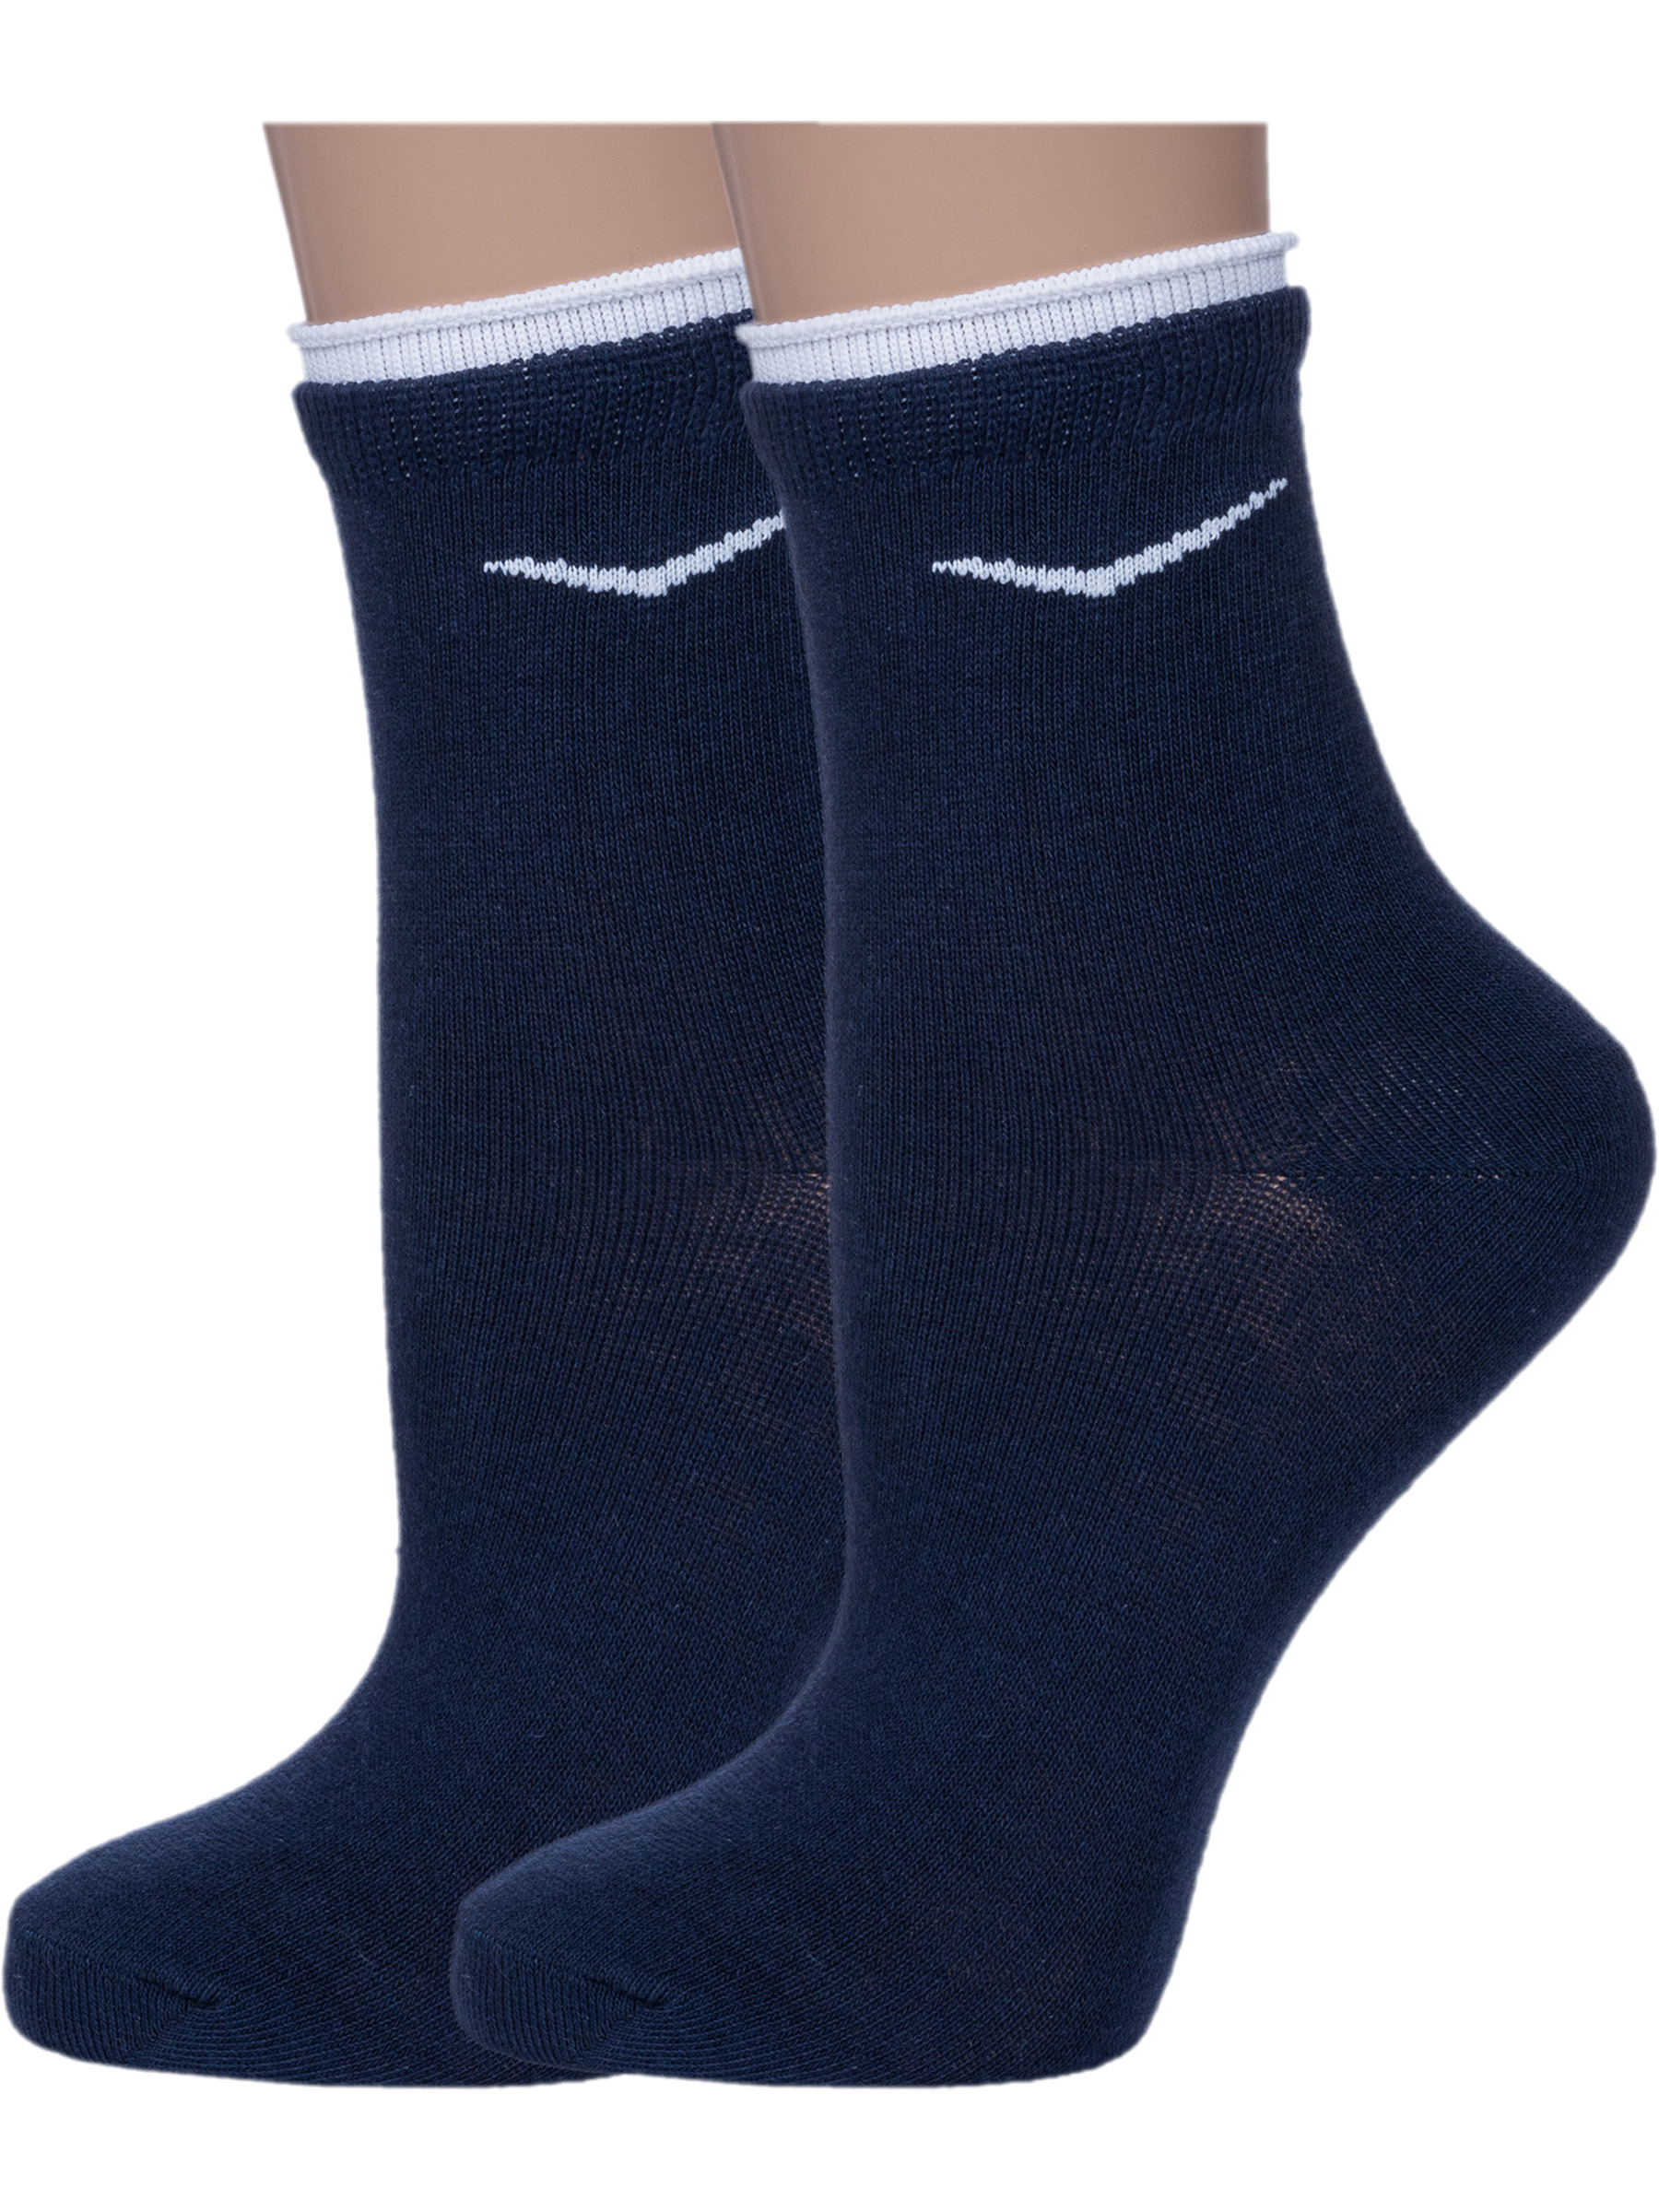 Комплект носков женских Смоленская Чулочная Фабрика 2-4С63 синих 25, 2 пары